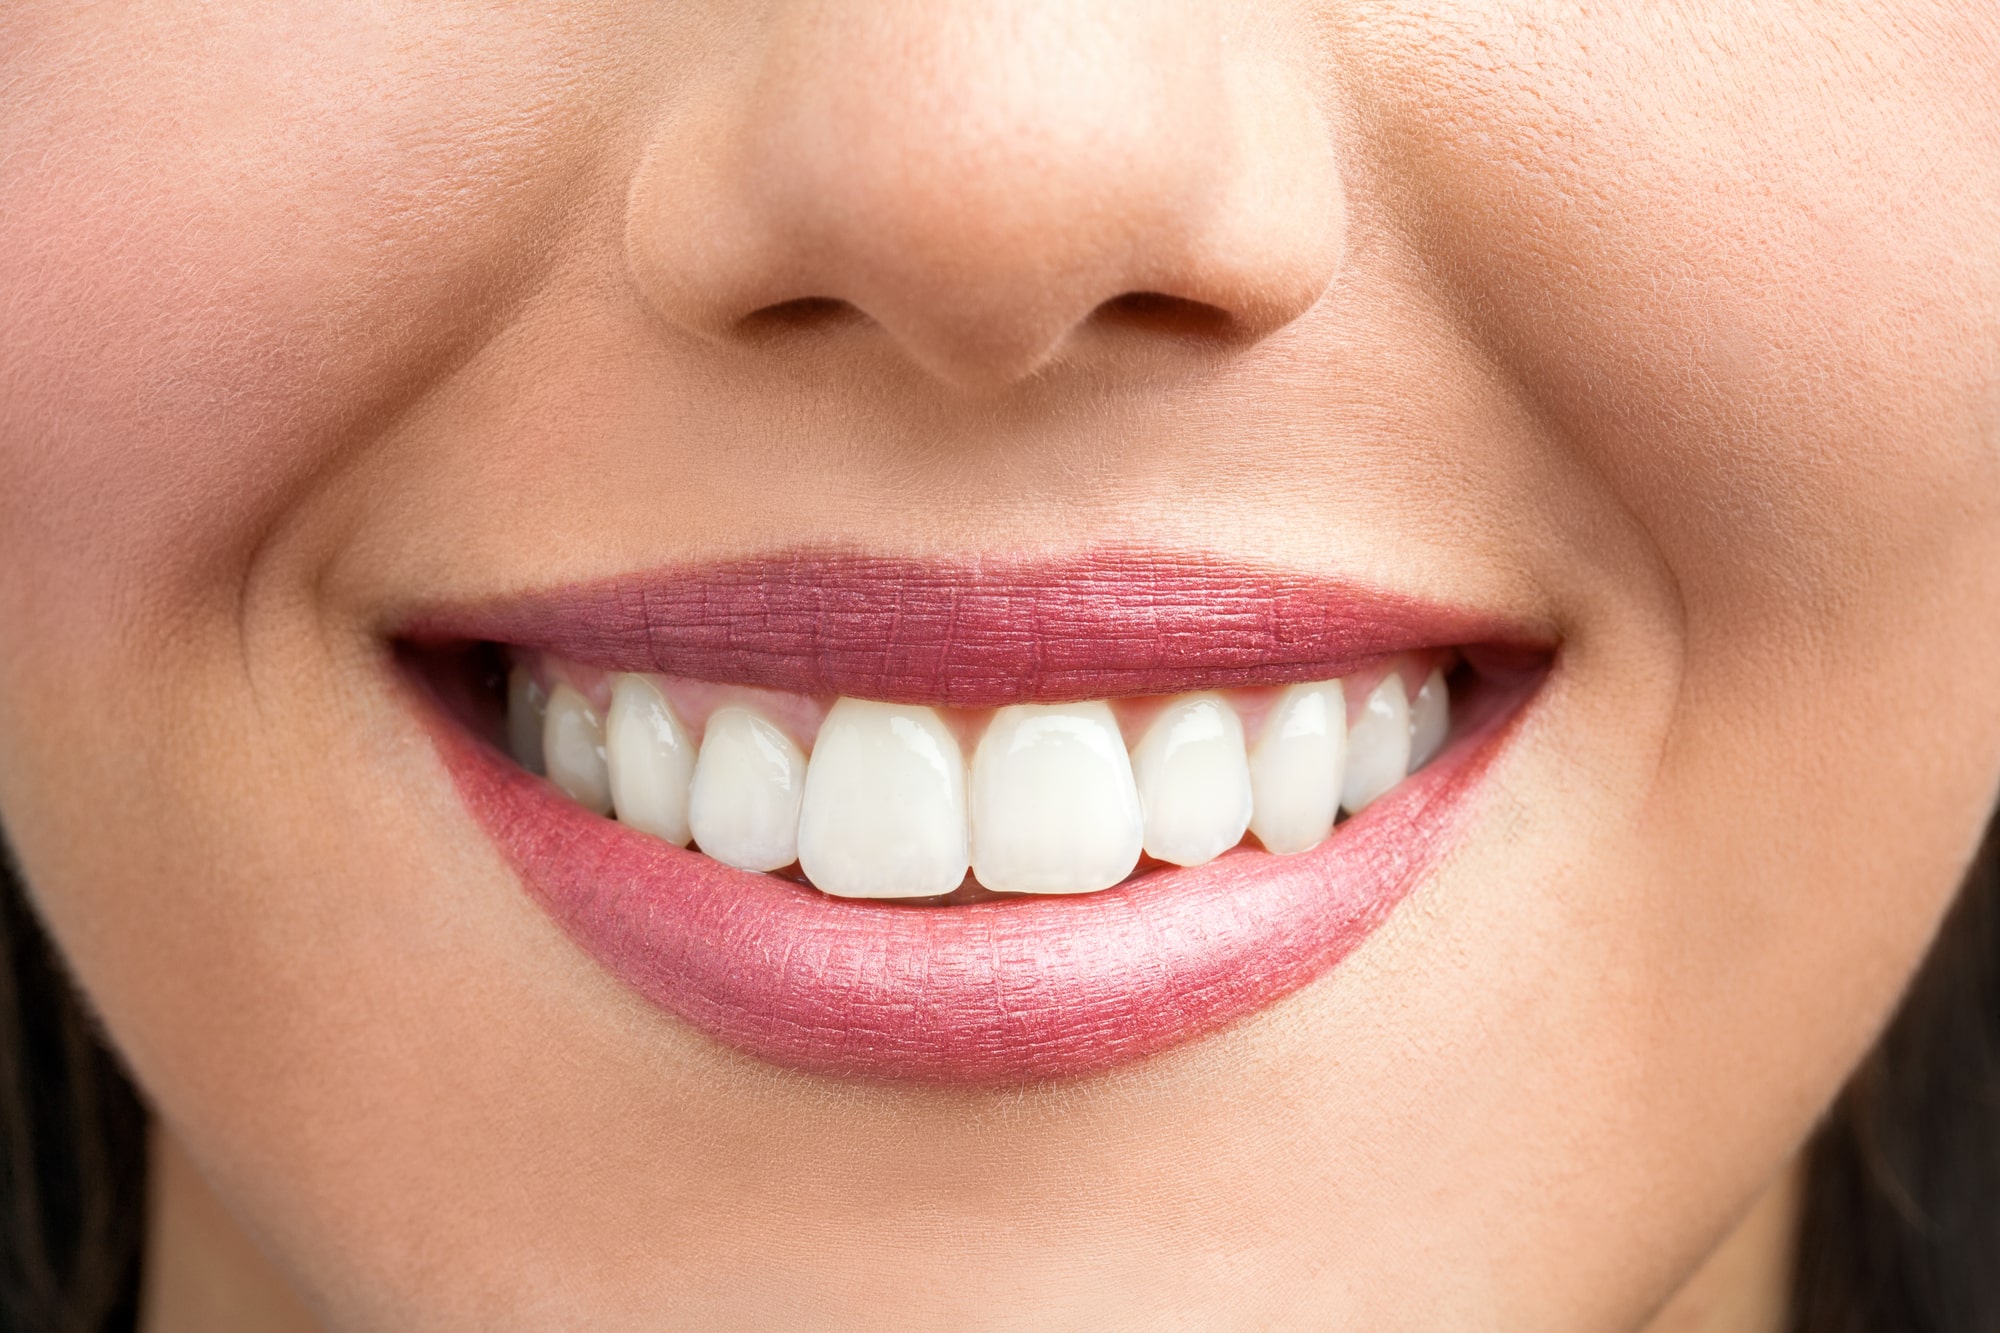 Blanchiment des dents : Voici La liste des produits nocifs selon 60 millions de consommateurs